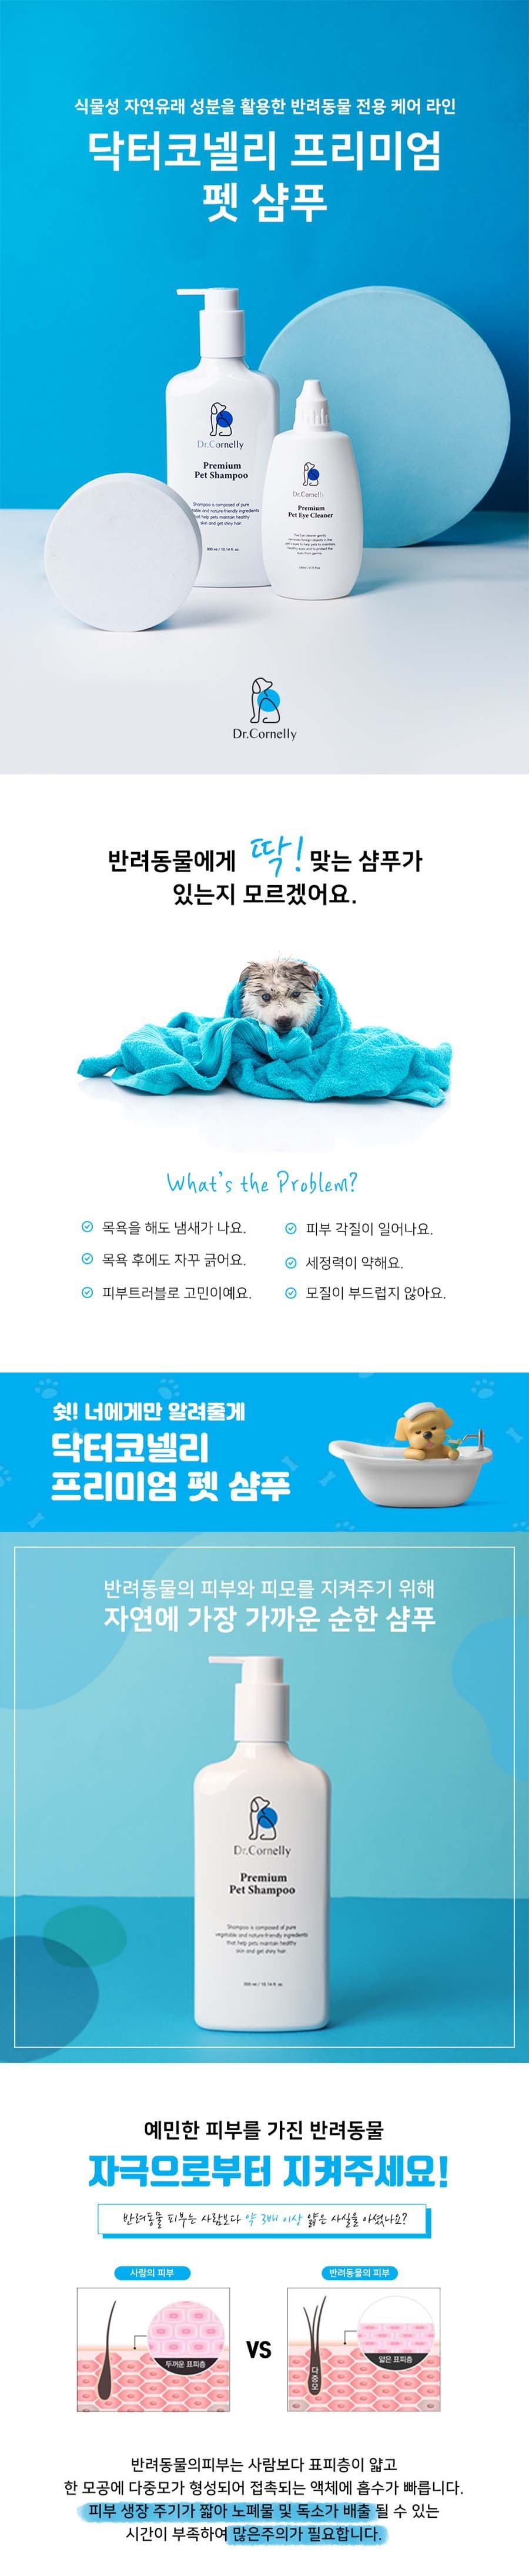 韓國 DR. CORNELLY 優質寵物洗髮精 300ml